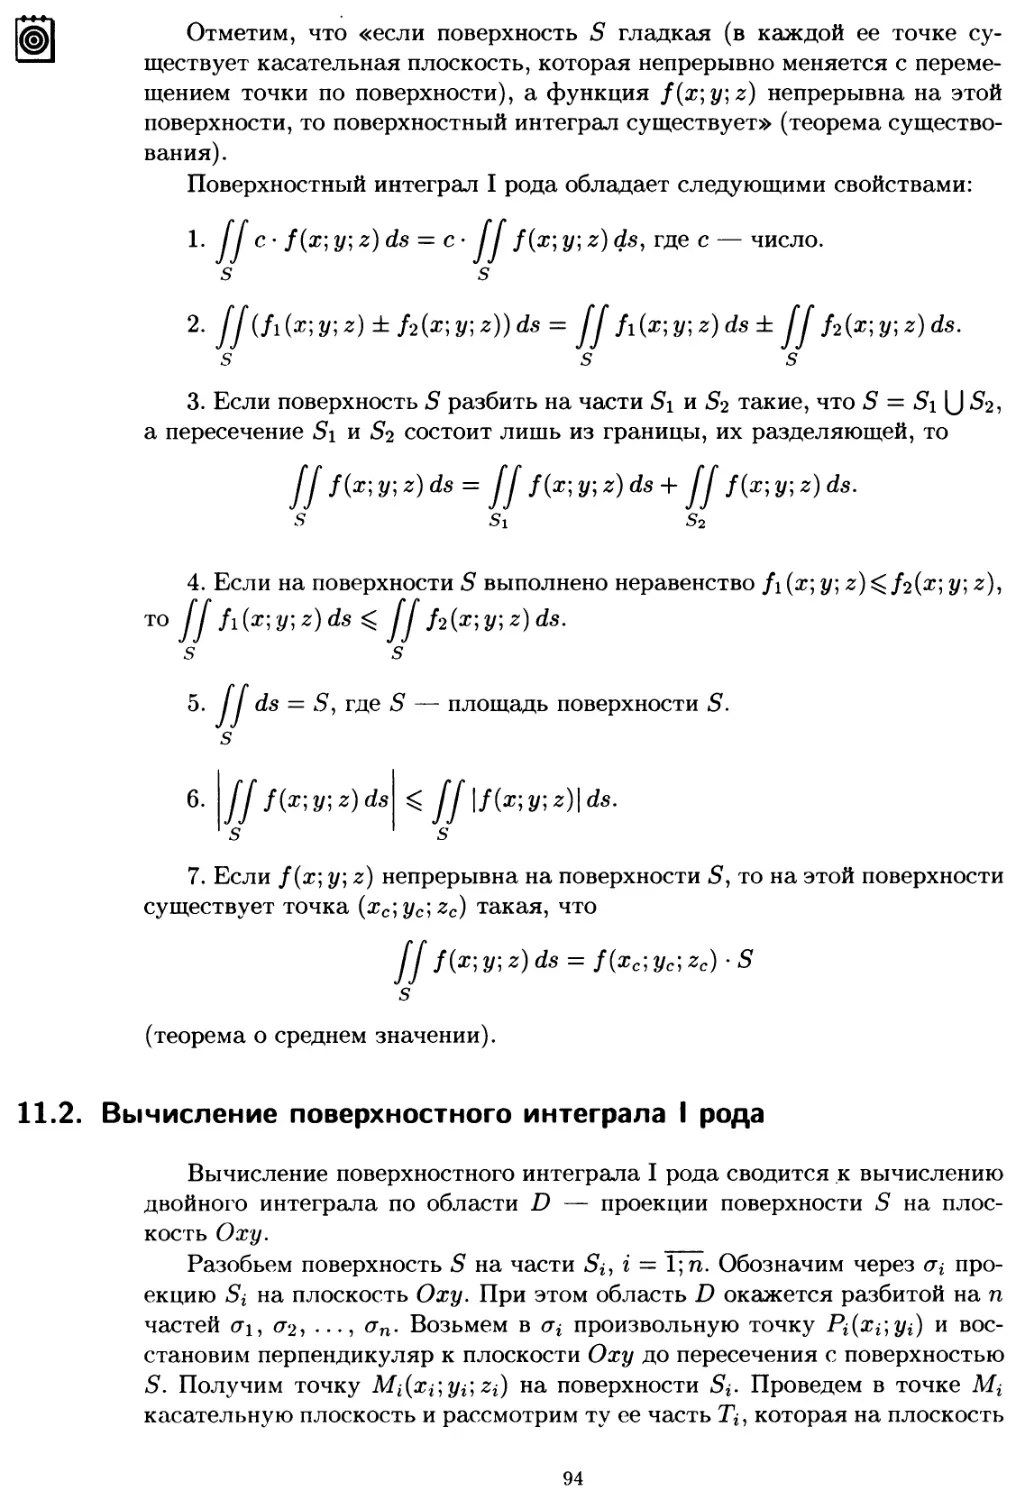 11.2. Вычисление поверхностного интеграла I рода